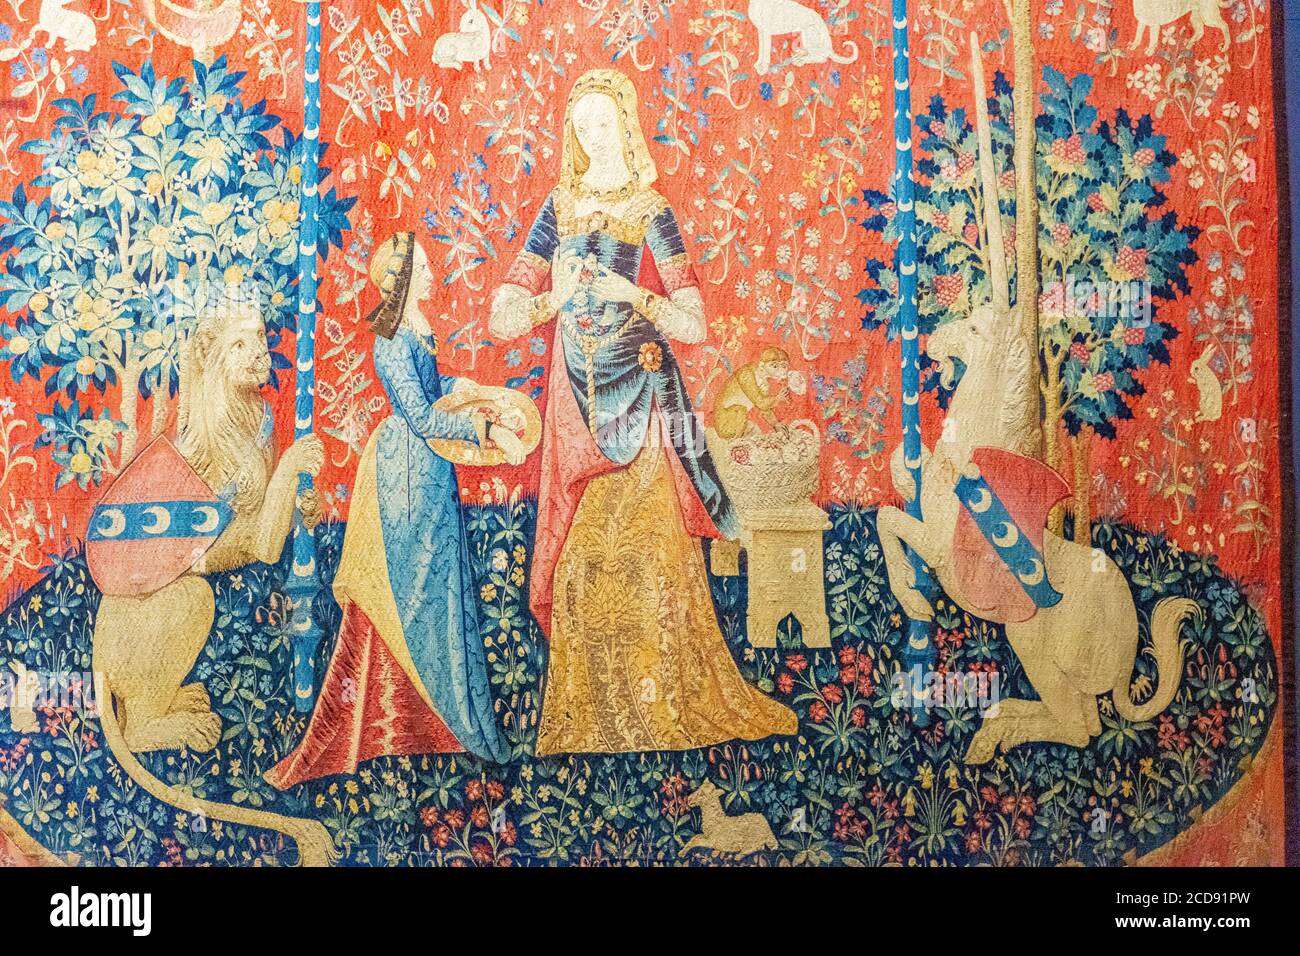 Francia, París, Museo Nacional de la Edad Media-Museo Cluny, tapices de la Señora con el Unicornio: El Odor Foto de stock